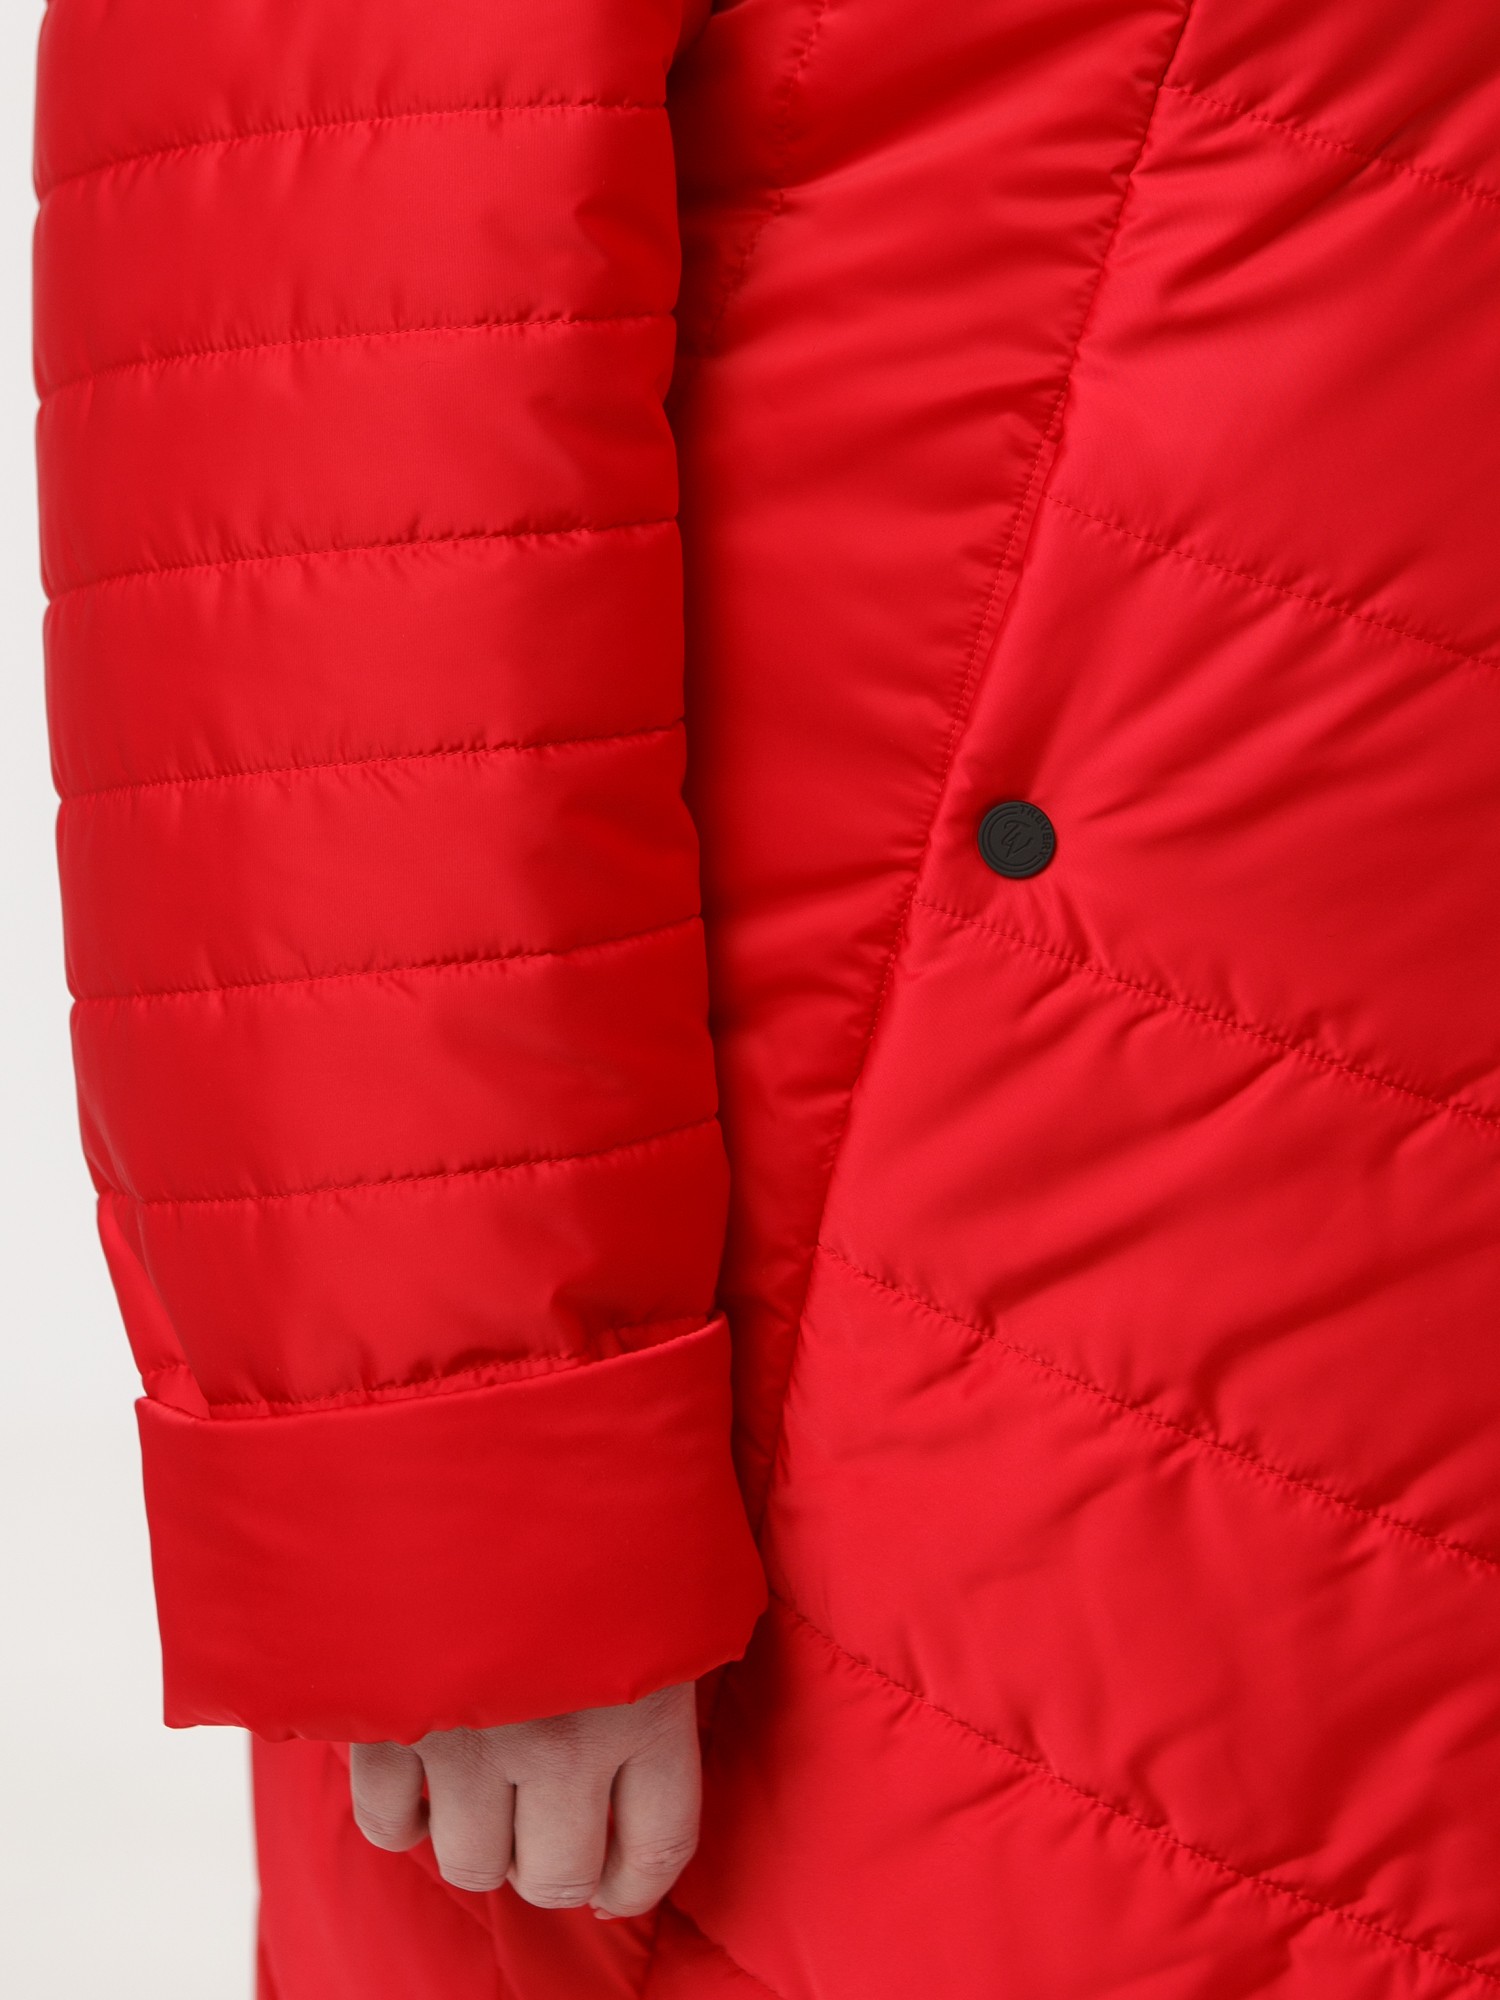 Пальто из комбинированной стеганной ткани черного цвета с брендированными лентами, цвет красный в интернет-магазине Фабрики Тревери